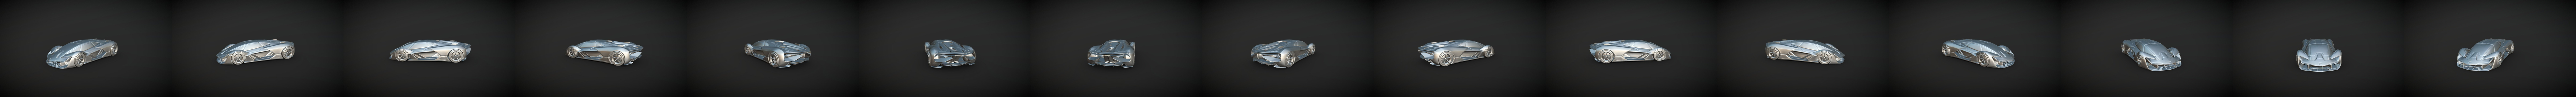 Lamborghini Terzo Millennio - 3D Model by davedesign